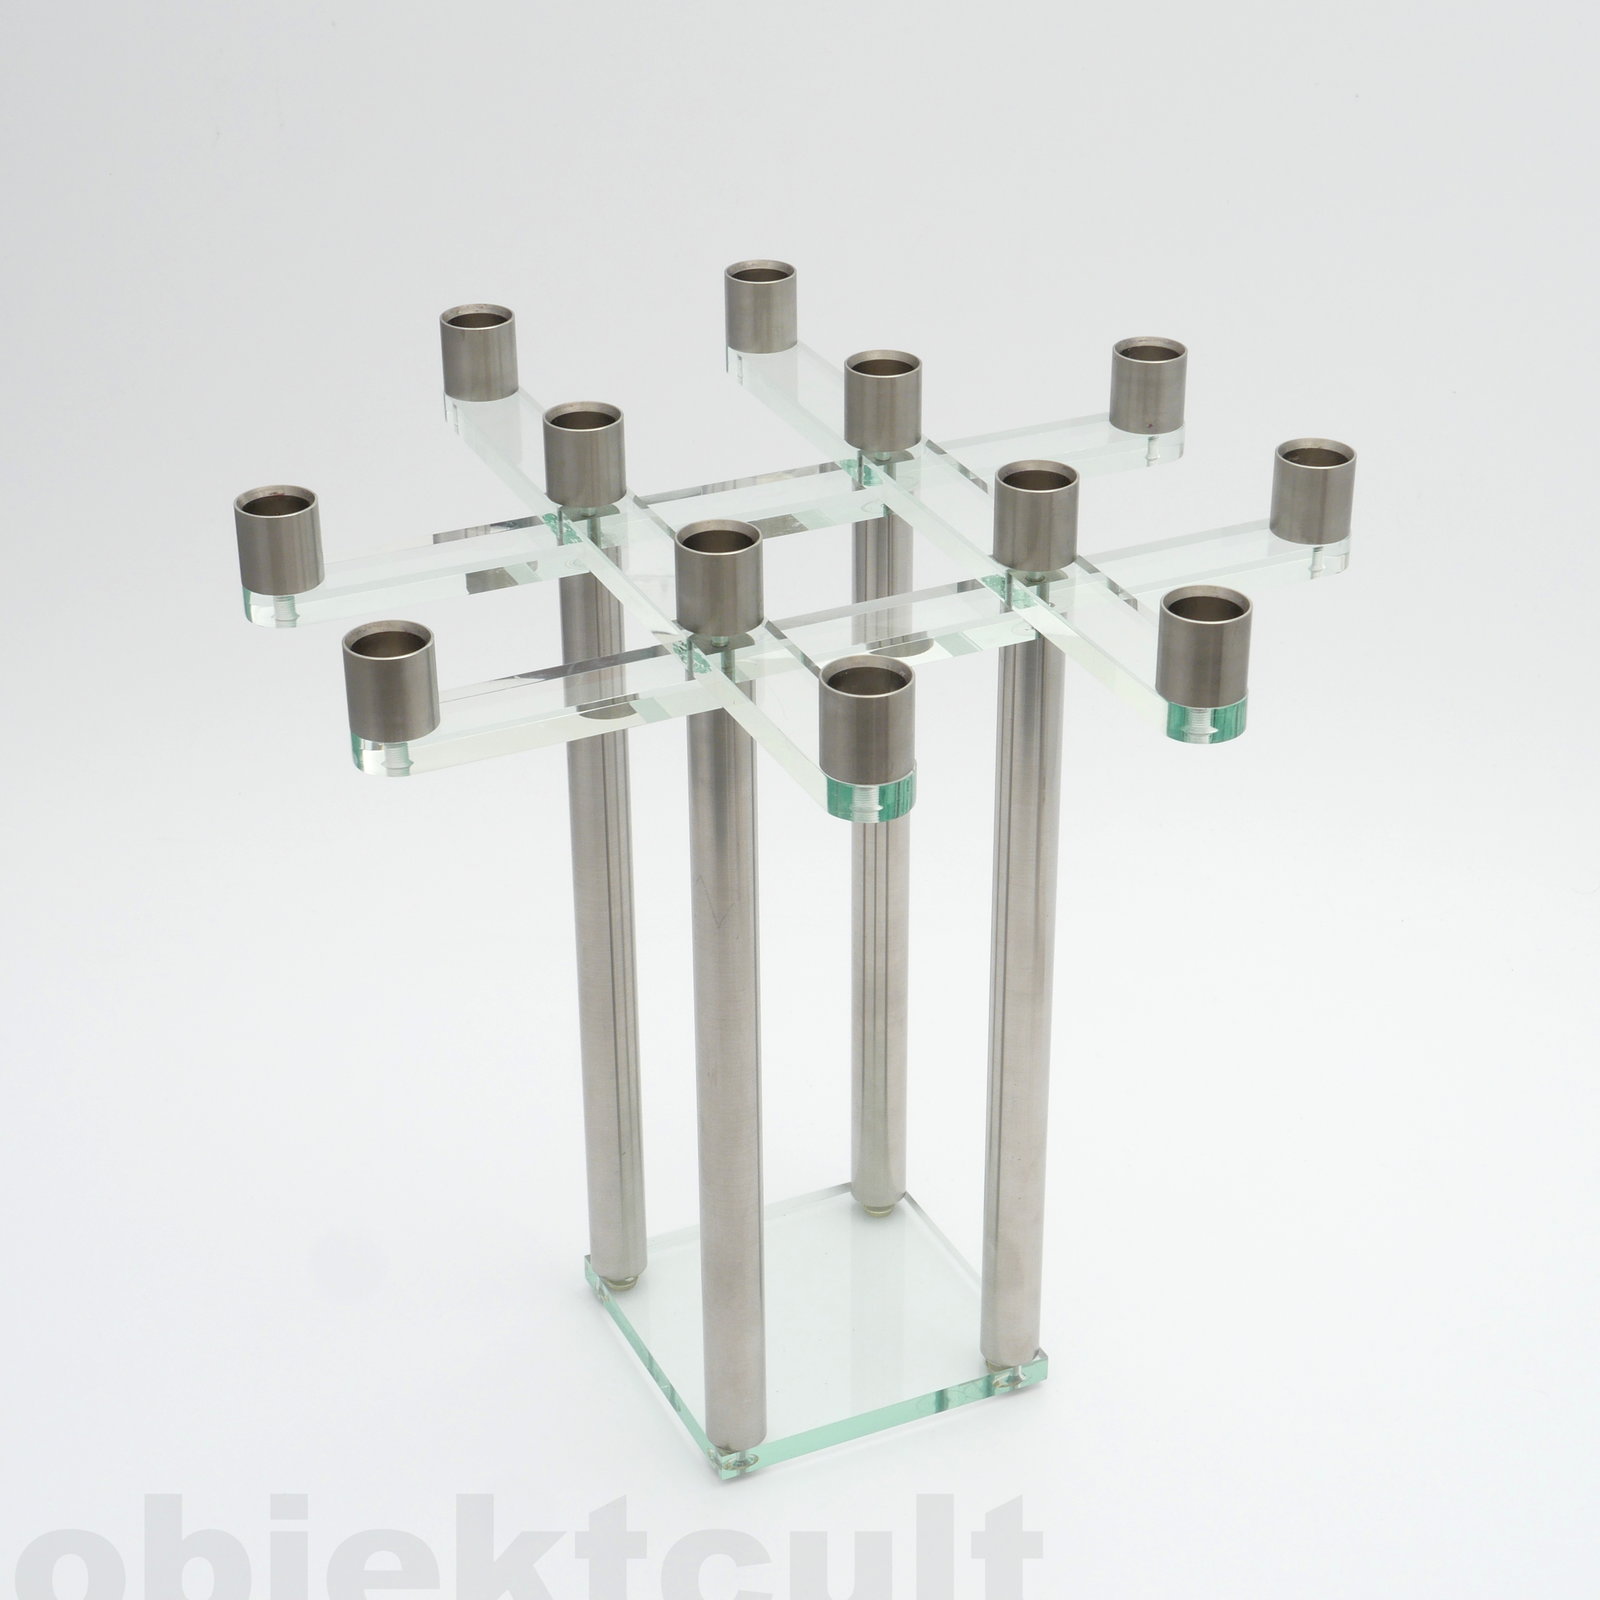 candlestick, Kerzenleuchter, Salomon, manufacturer: Artwork, design: Andreas Weber, 1989